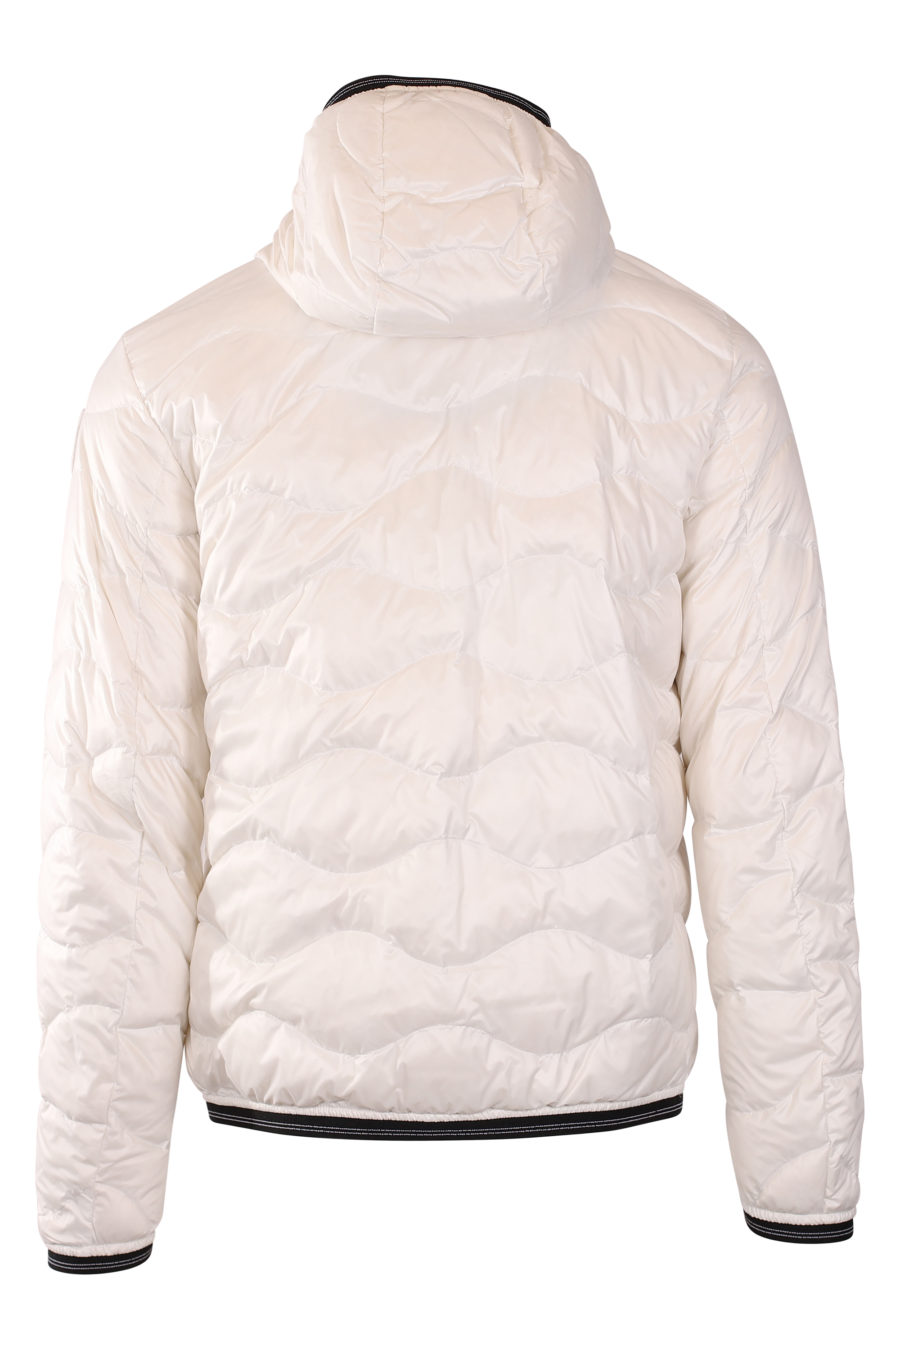 Weiße gewellte Jacke mit Kapuze - IMG 9417